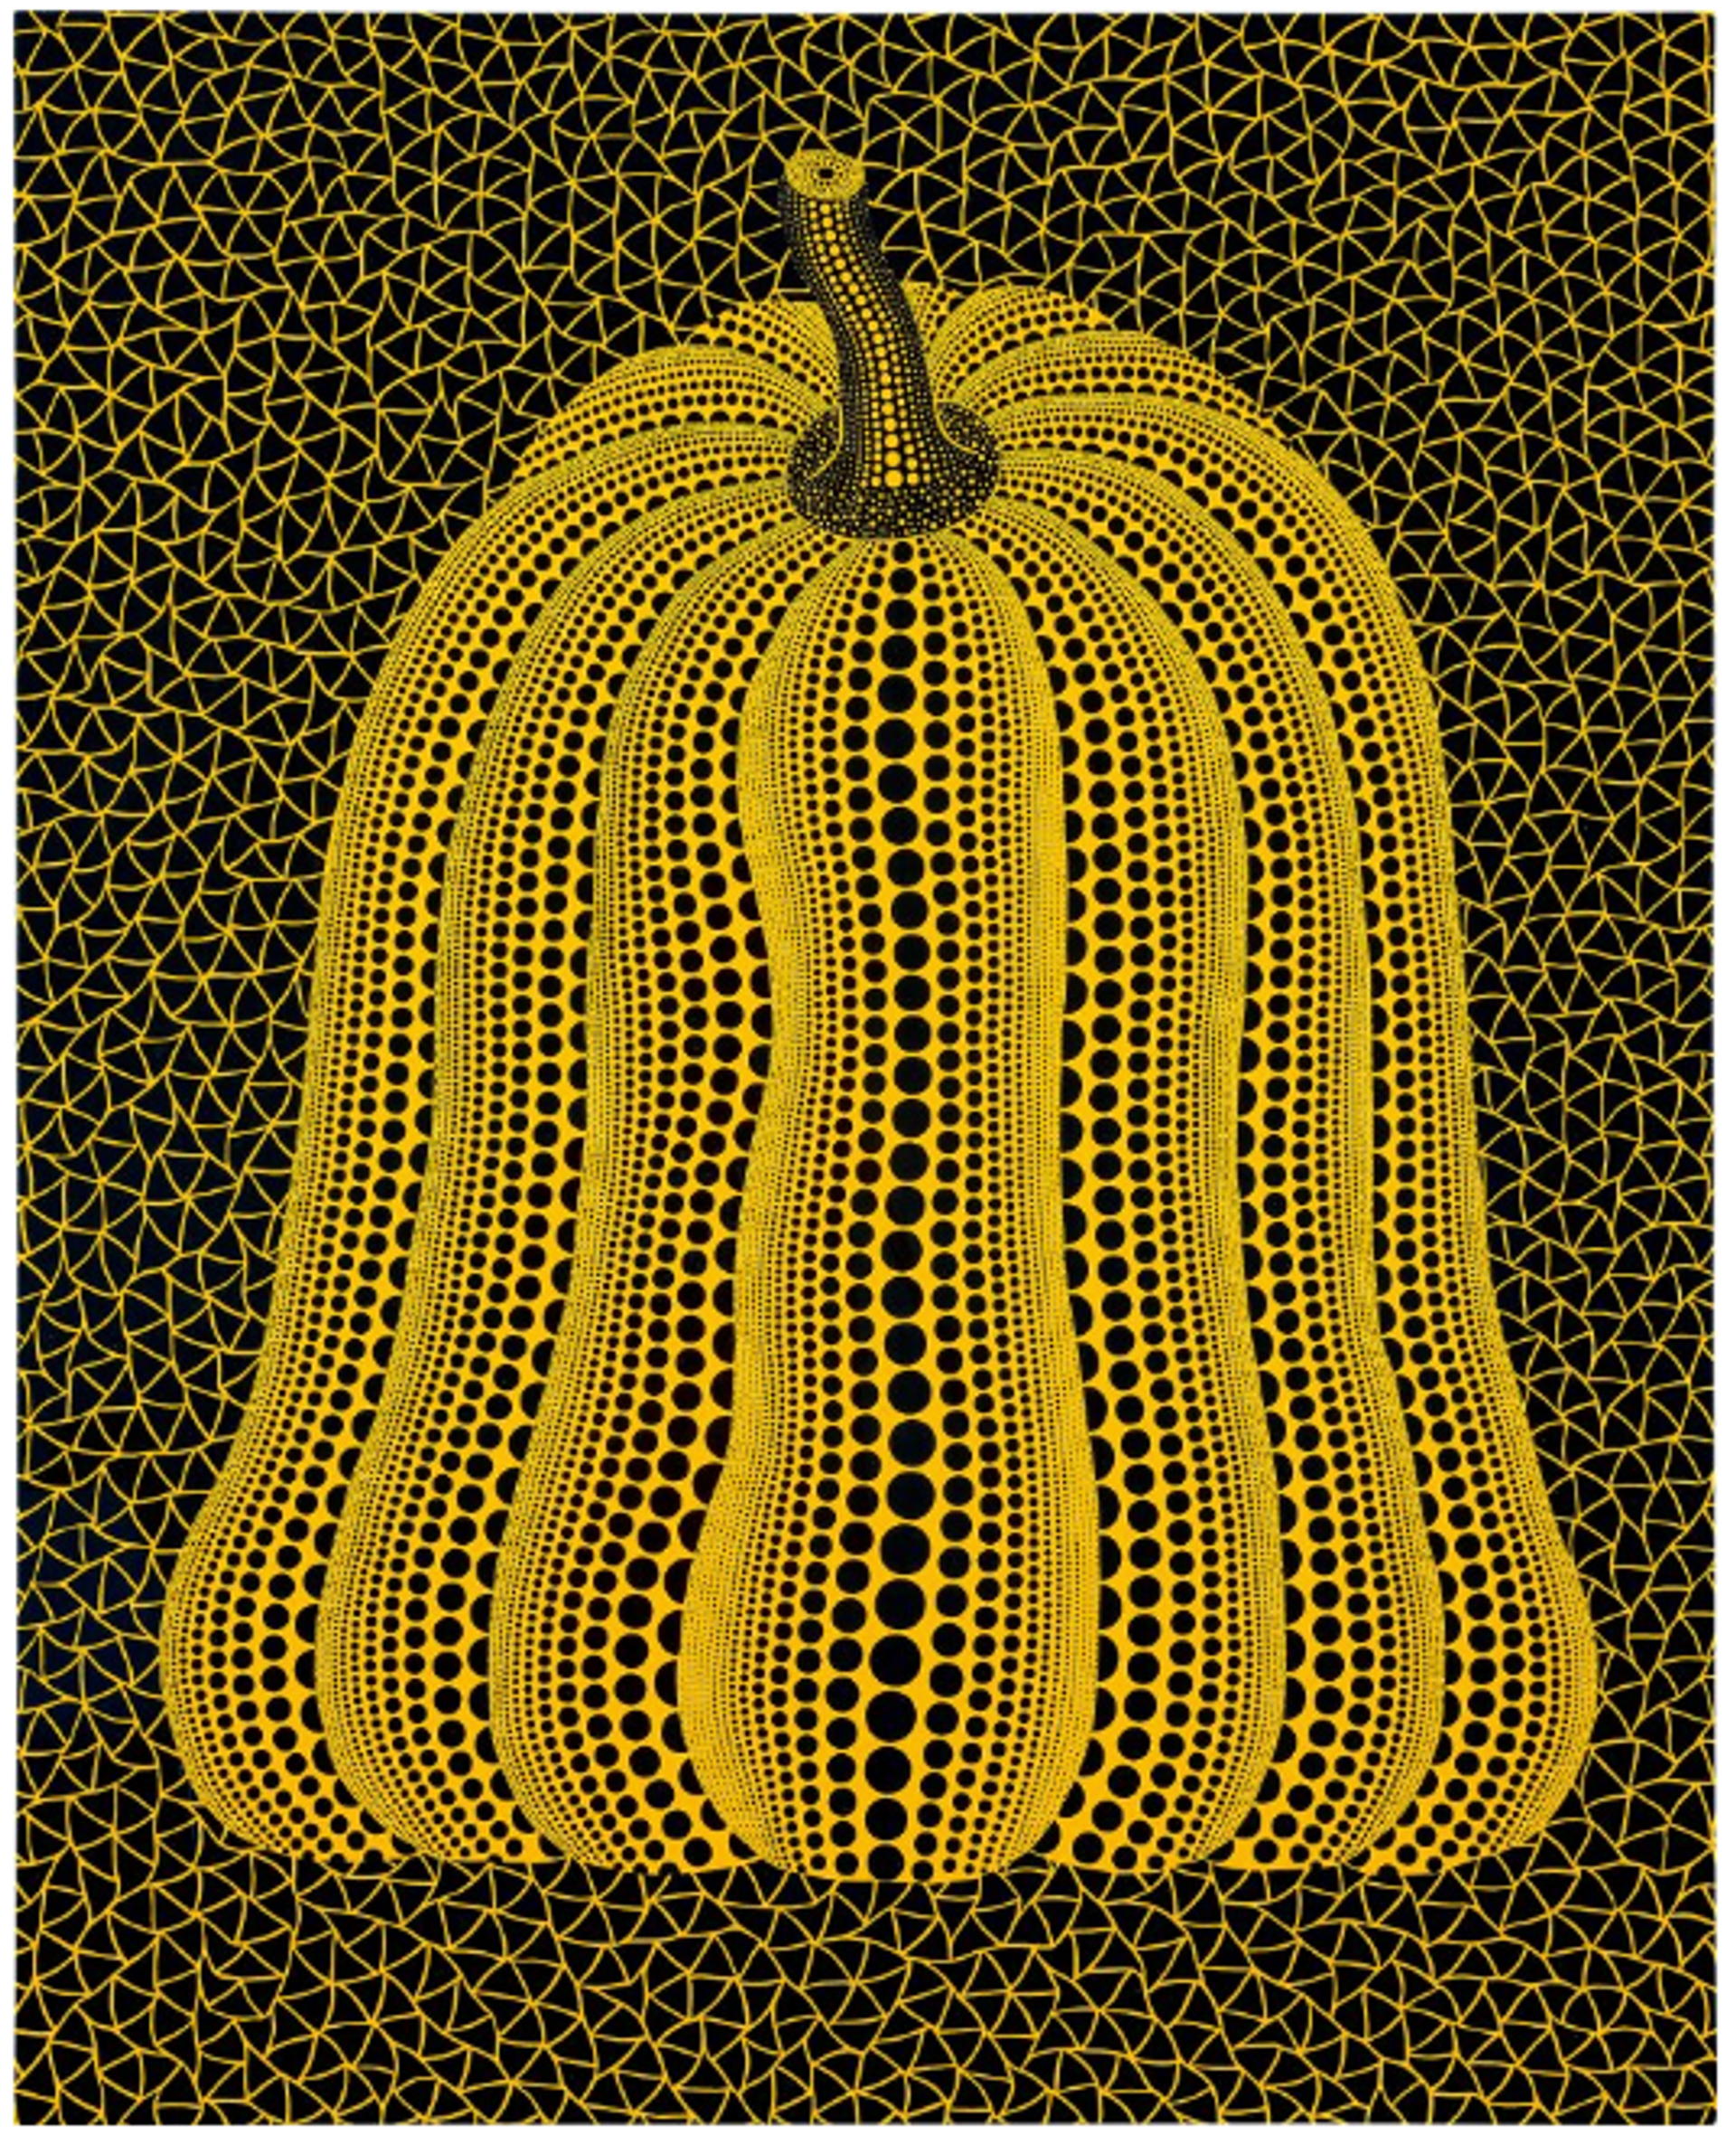 A-Pumpkin (BAGN8) by Yayoi Kusama - Sotheby's 2023 